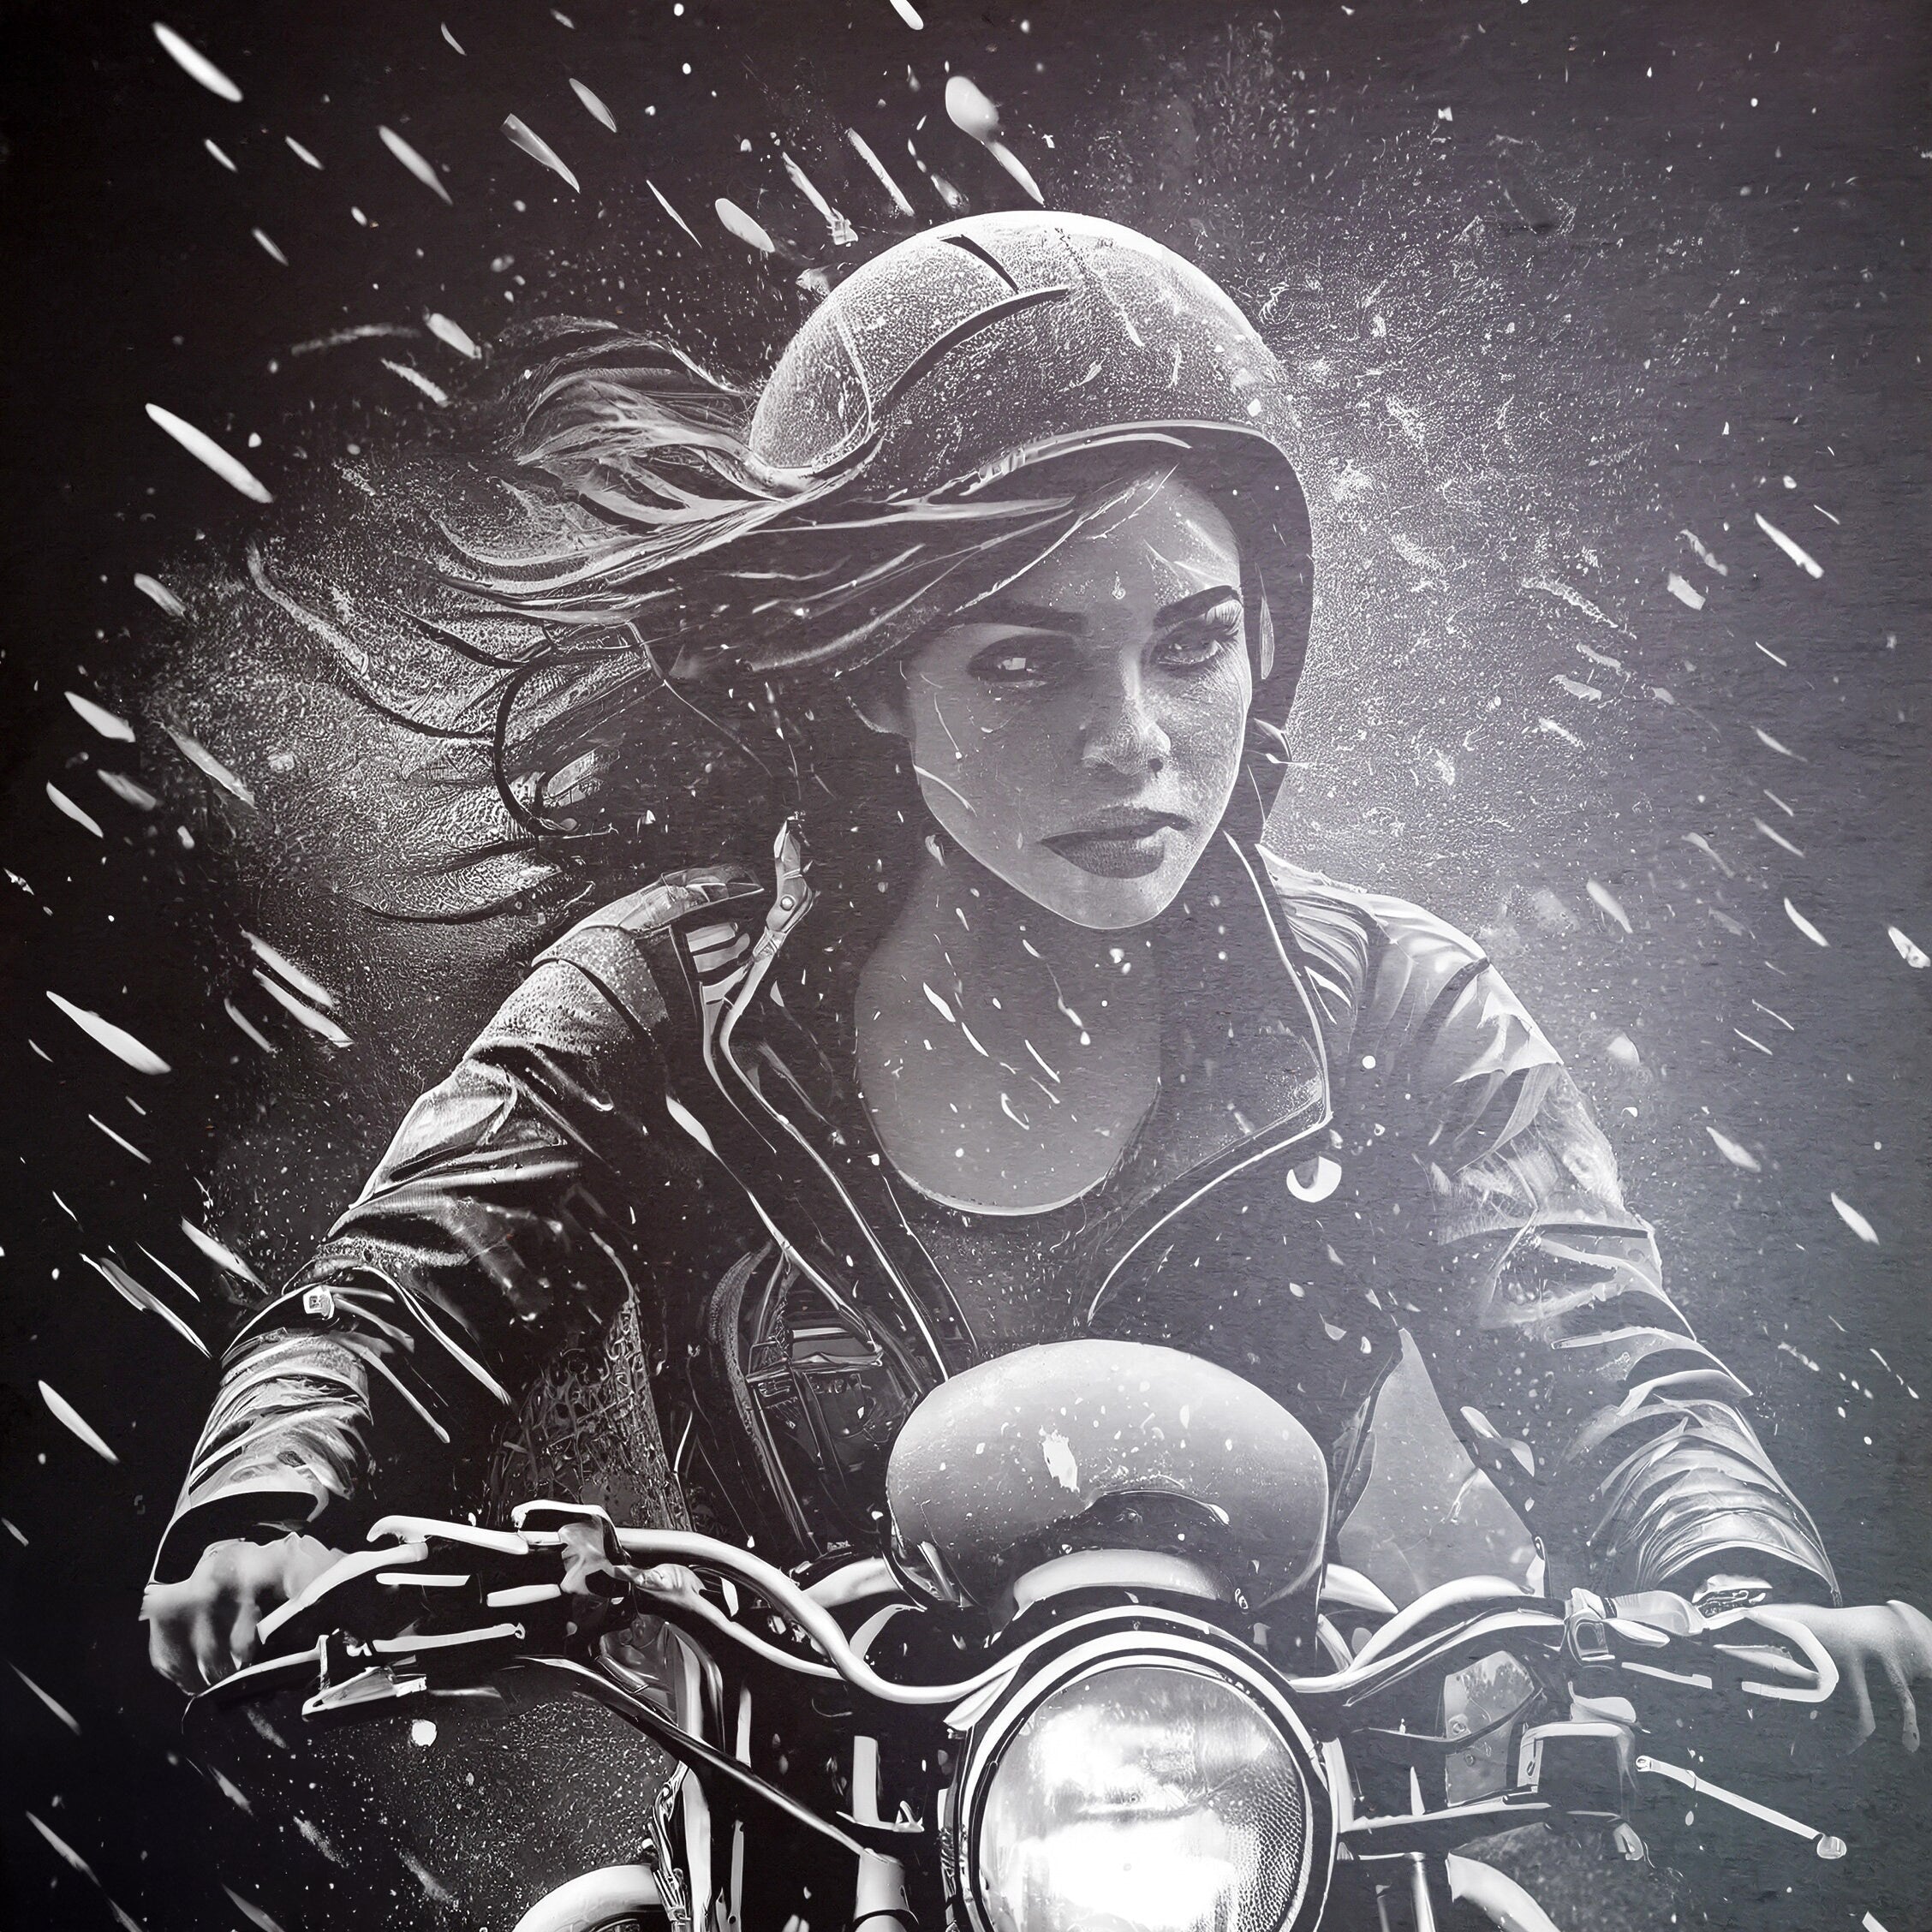 Slate - Wild Road: Chica en moto